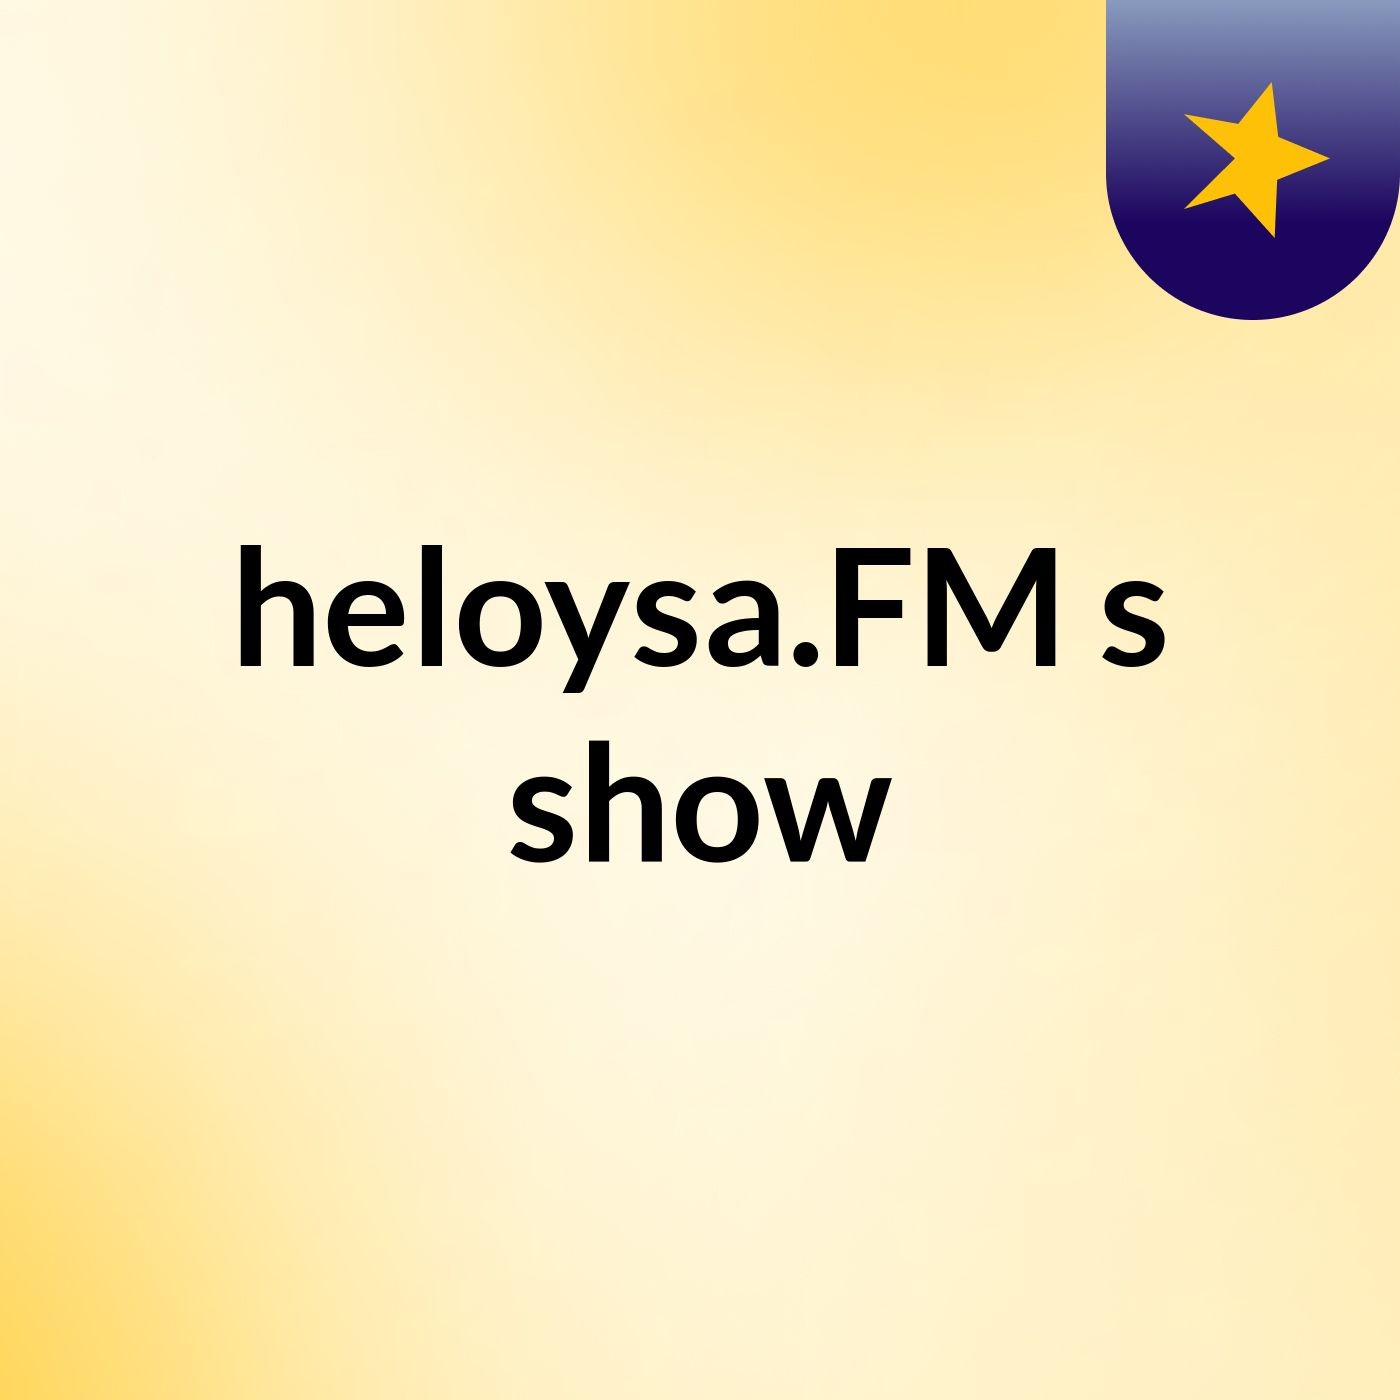 heloysa.FM's show